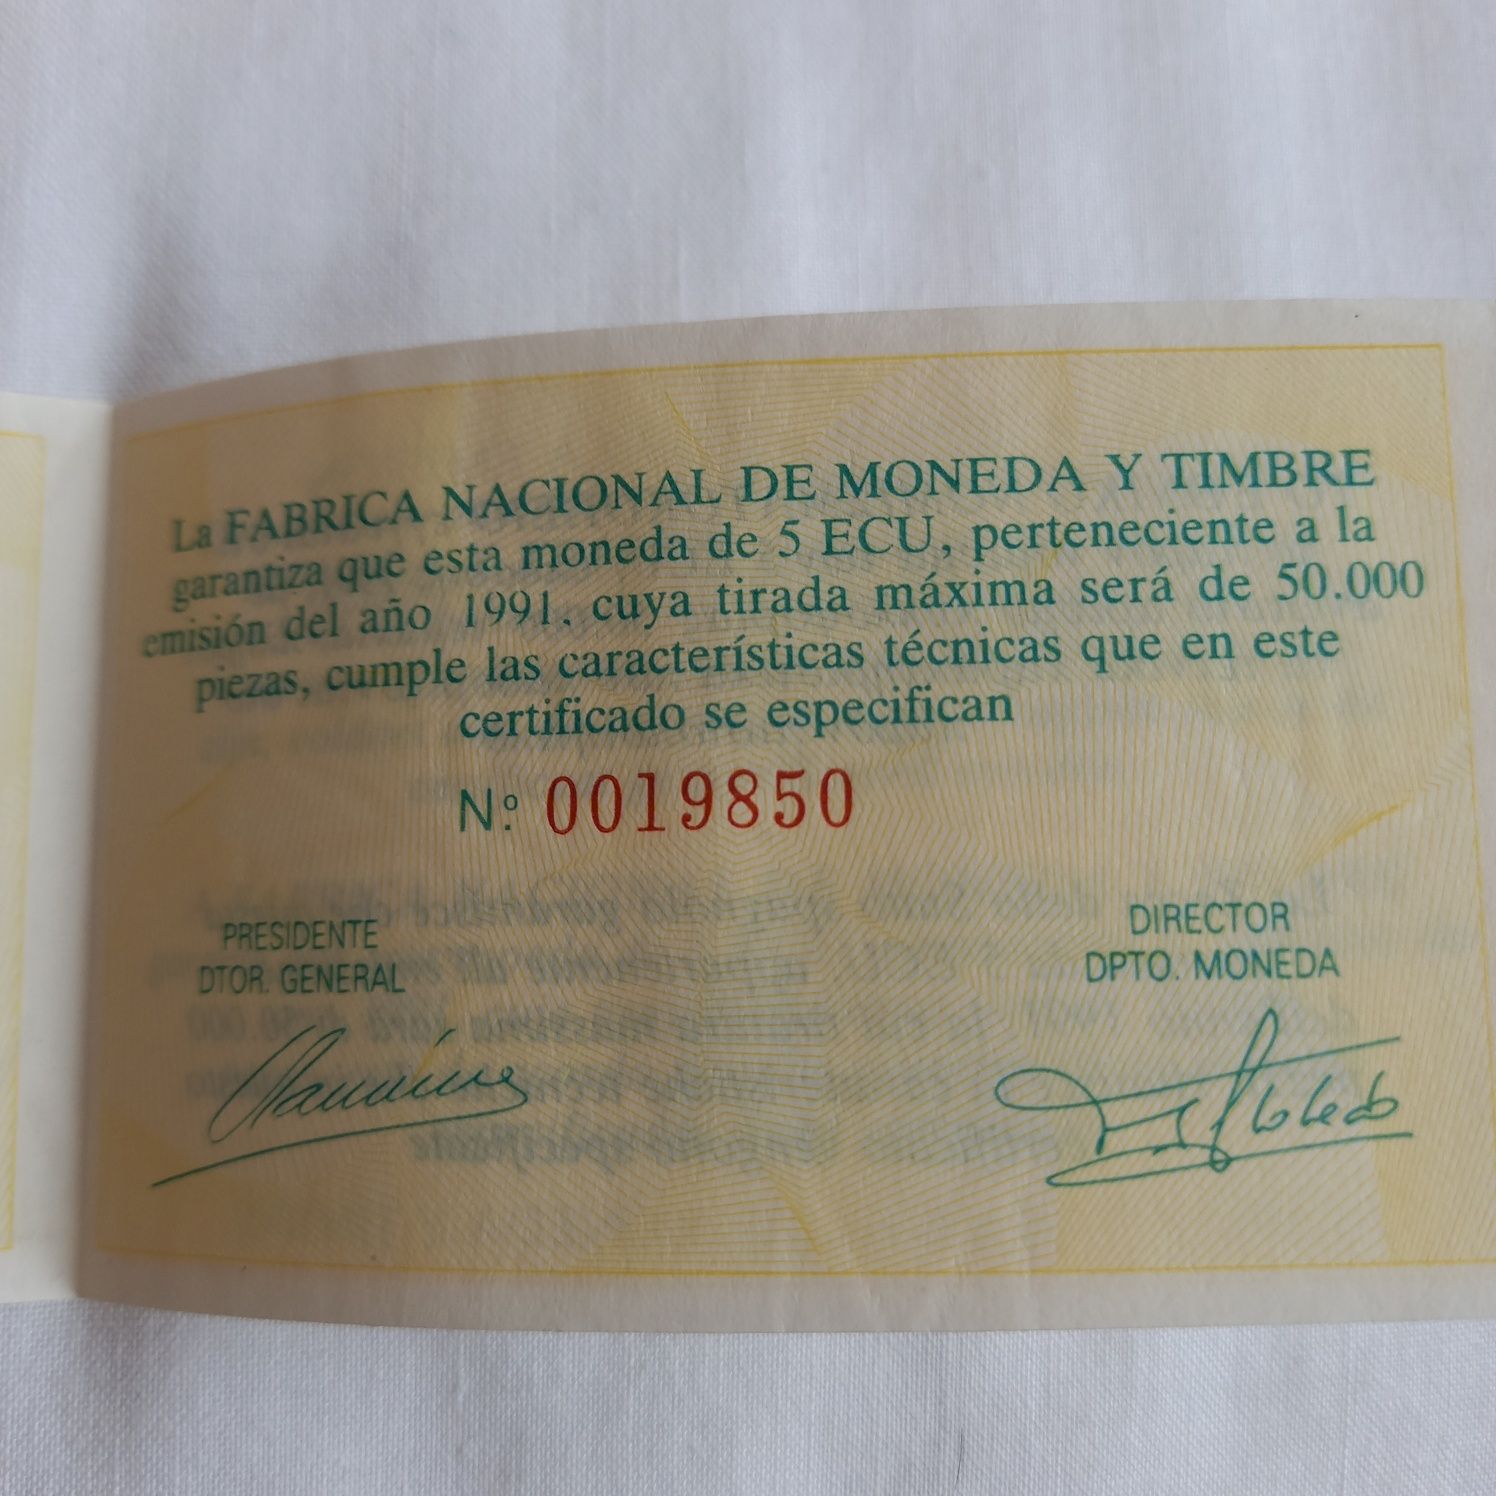 Срібна монета 5 екю Іспанія 1991 року